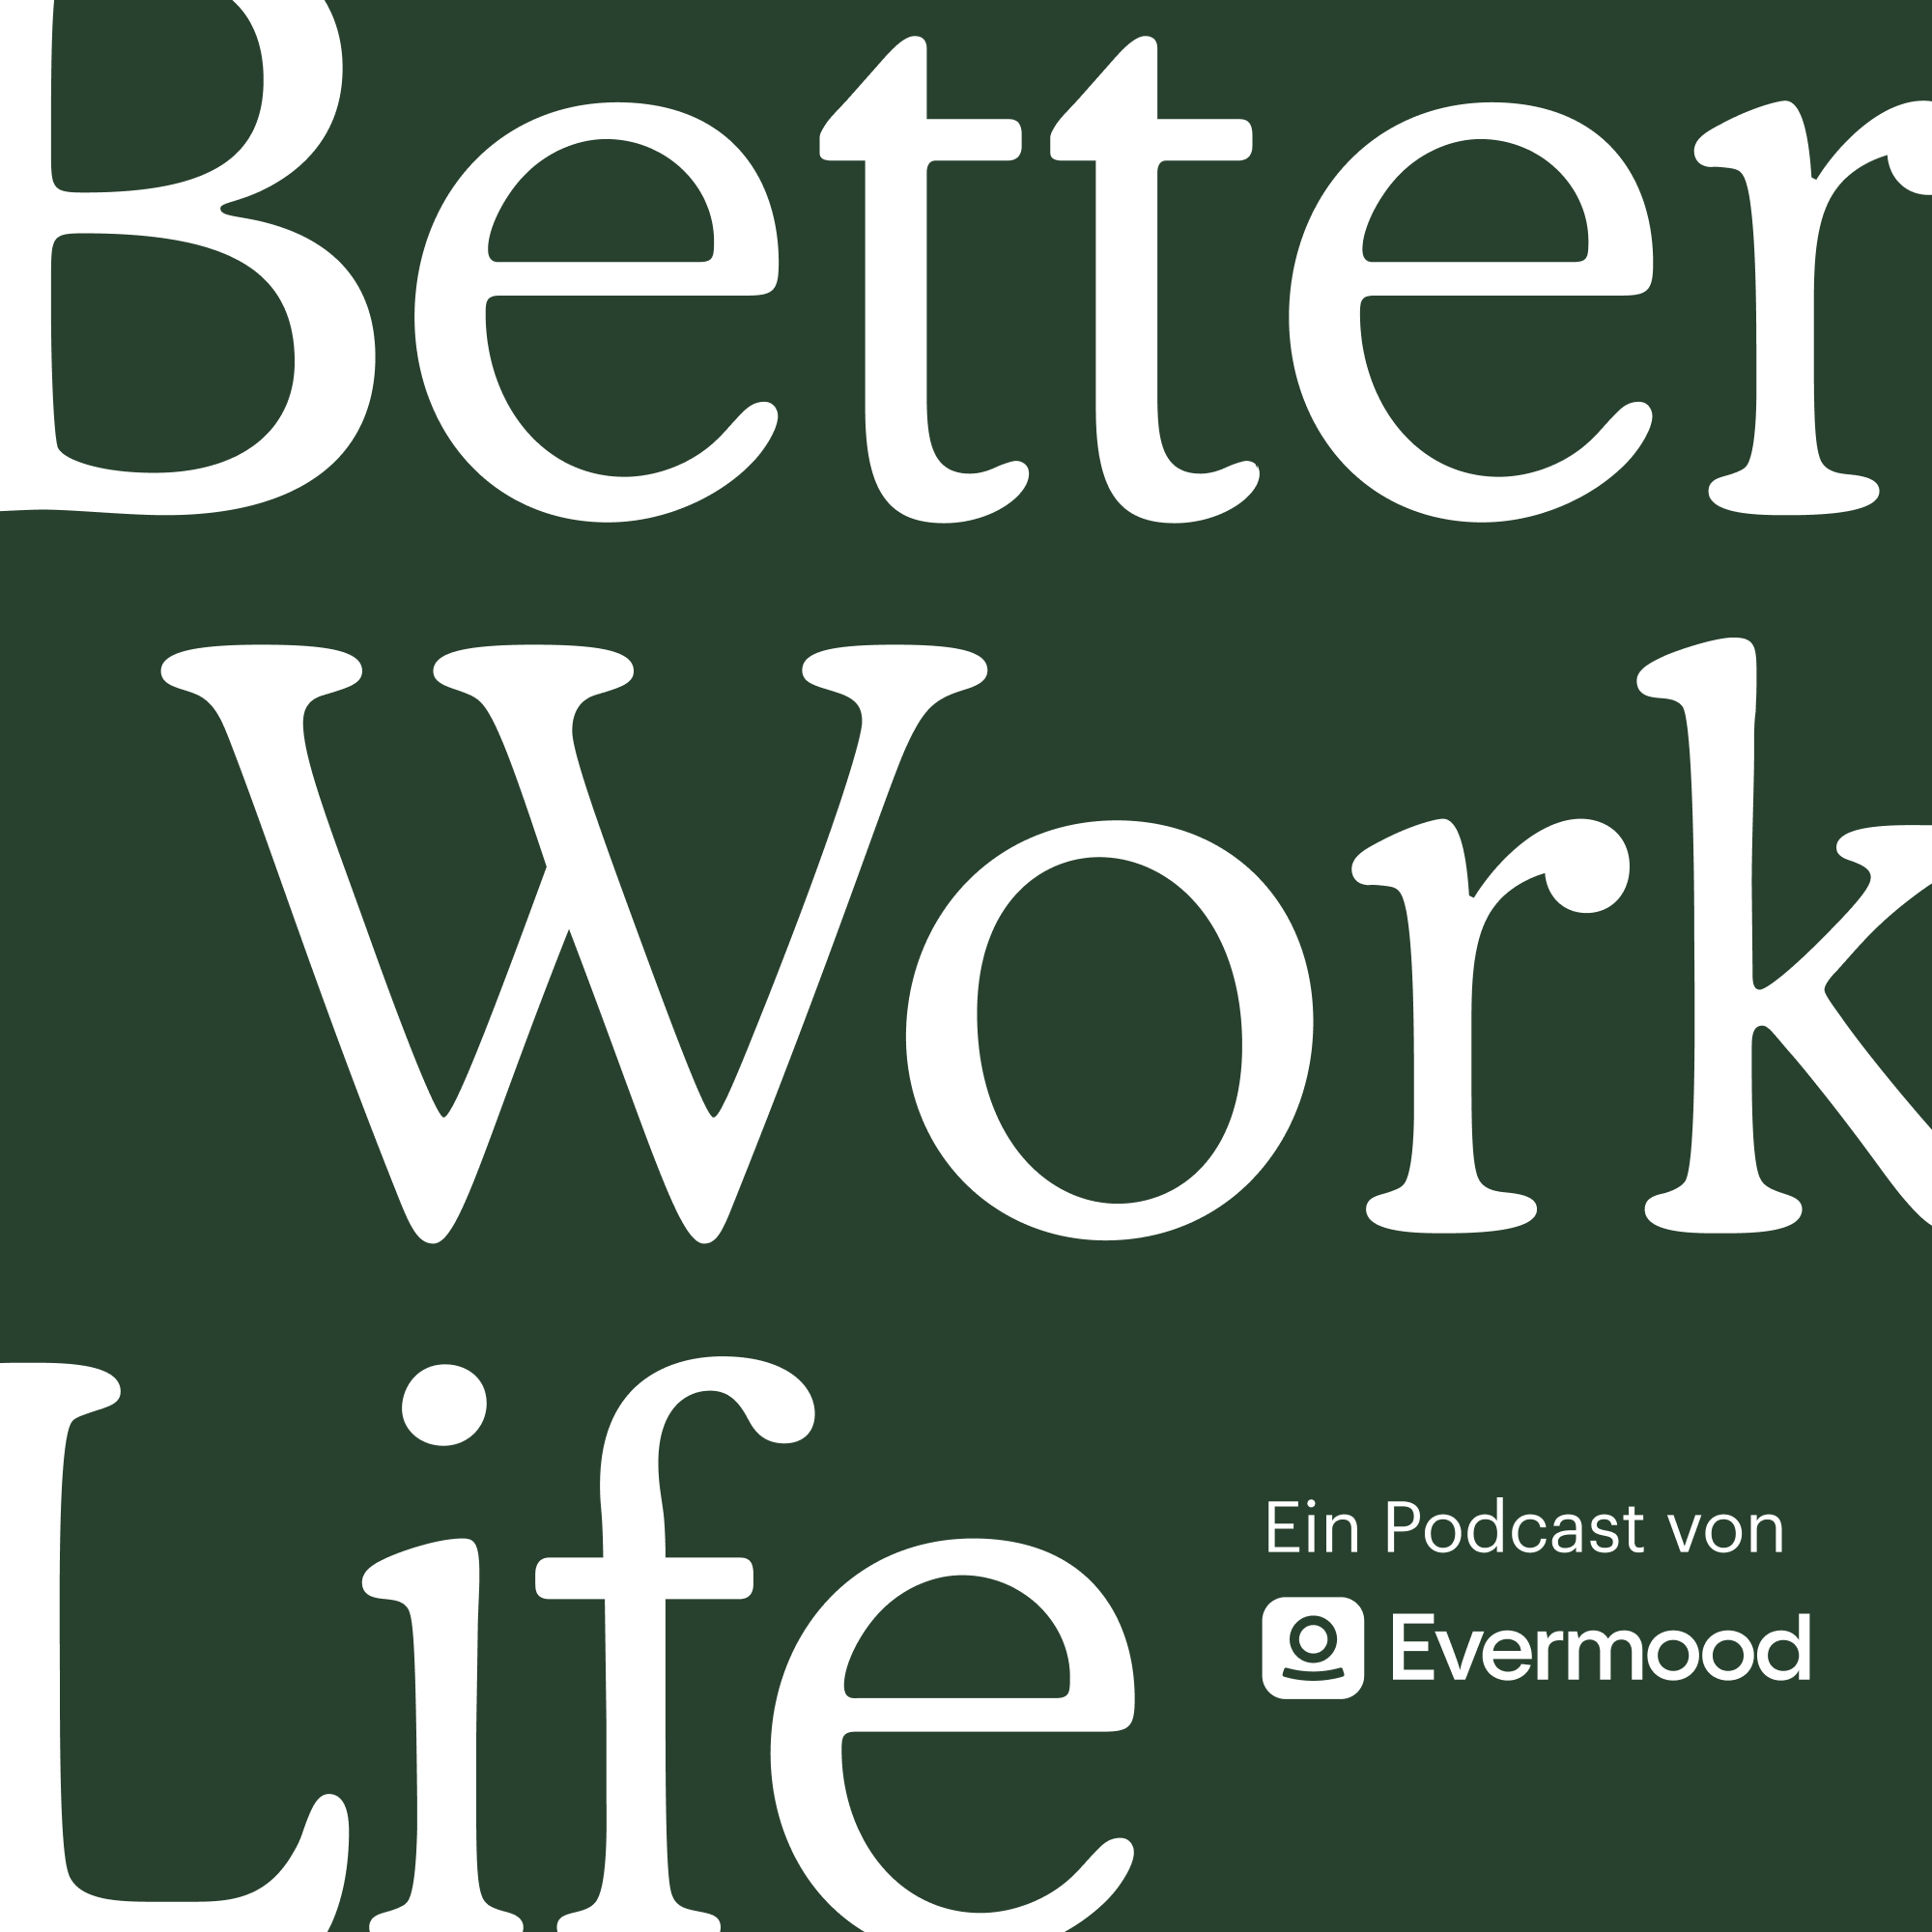 Artwork for podcast Better Work Life